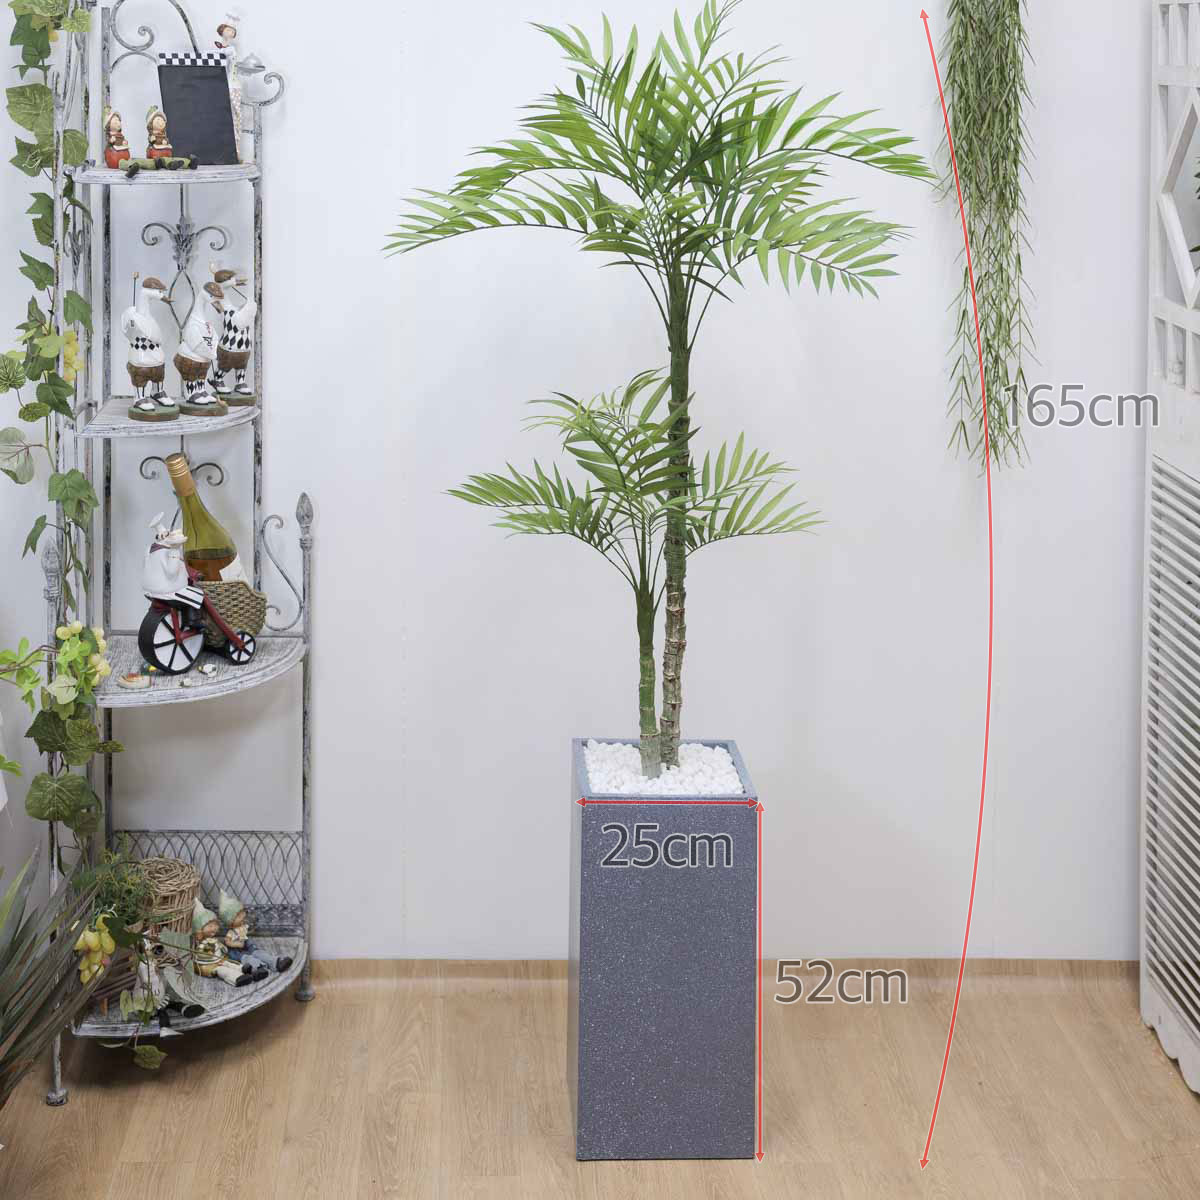 인조나무 아레카야자수 2단 145cm 사각화분 세팅 샘플